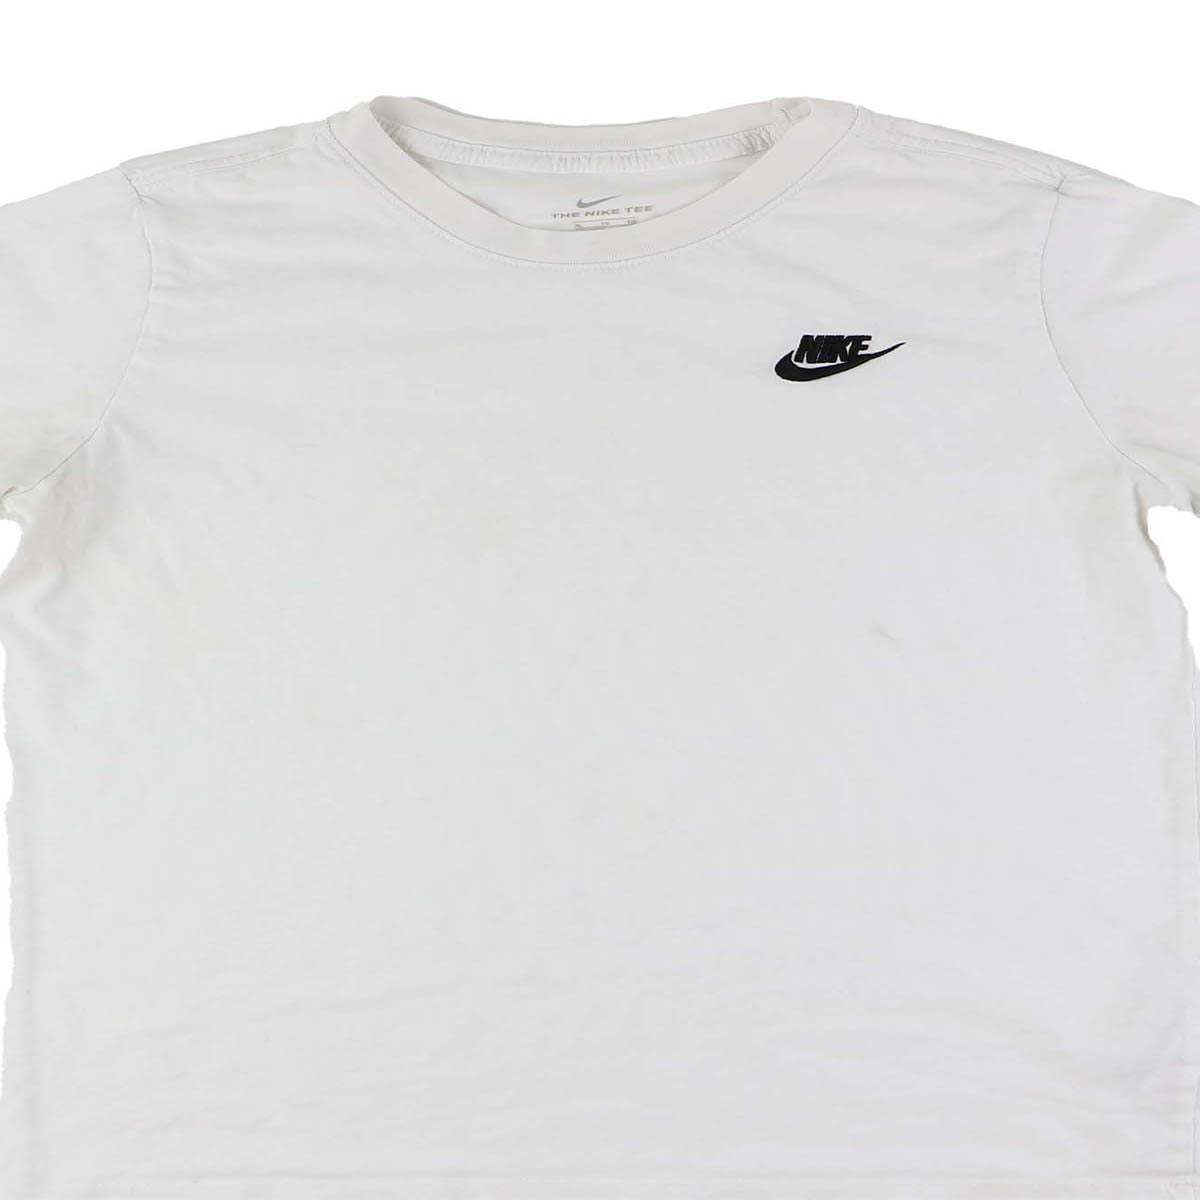 Nike T-shirt (S)